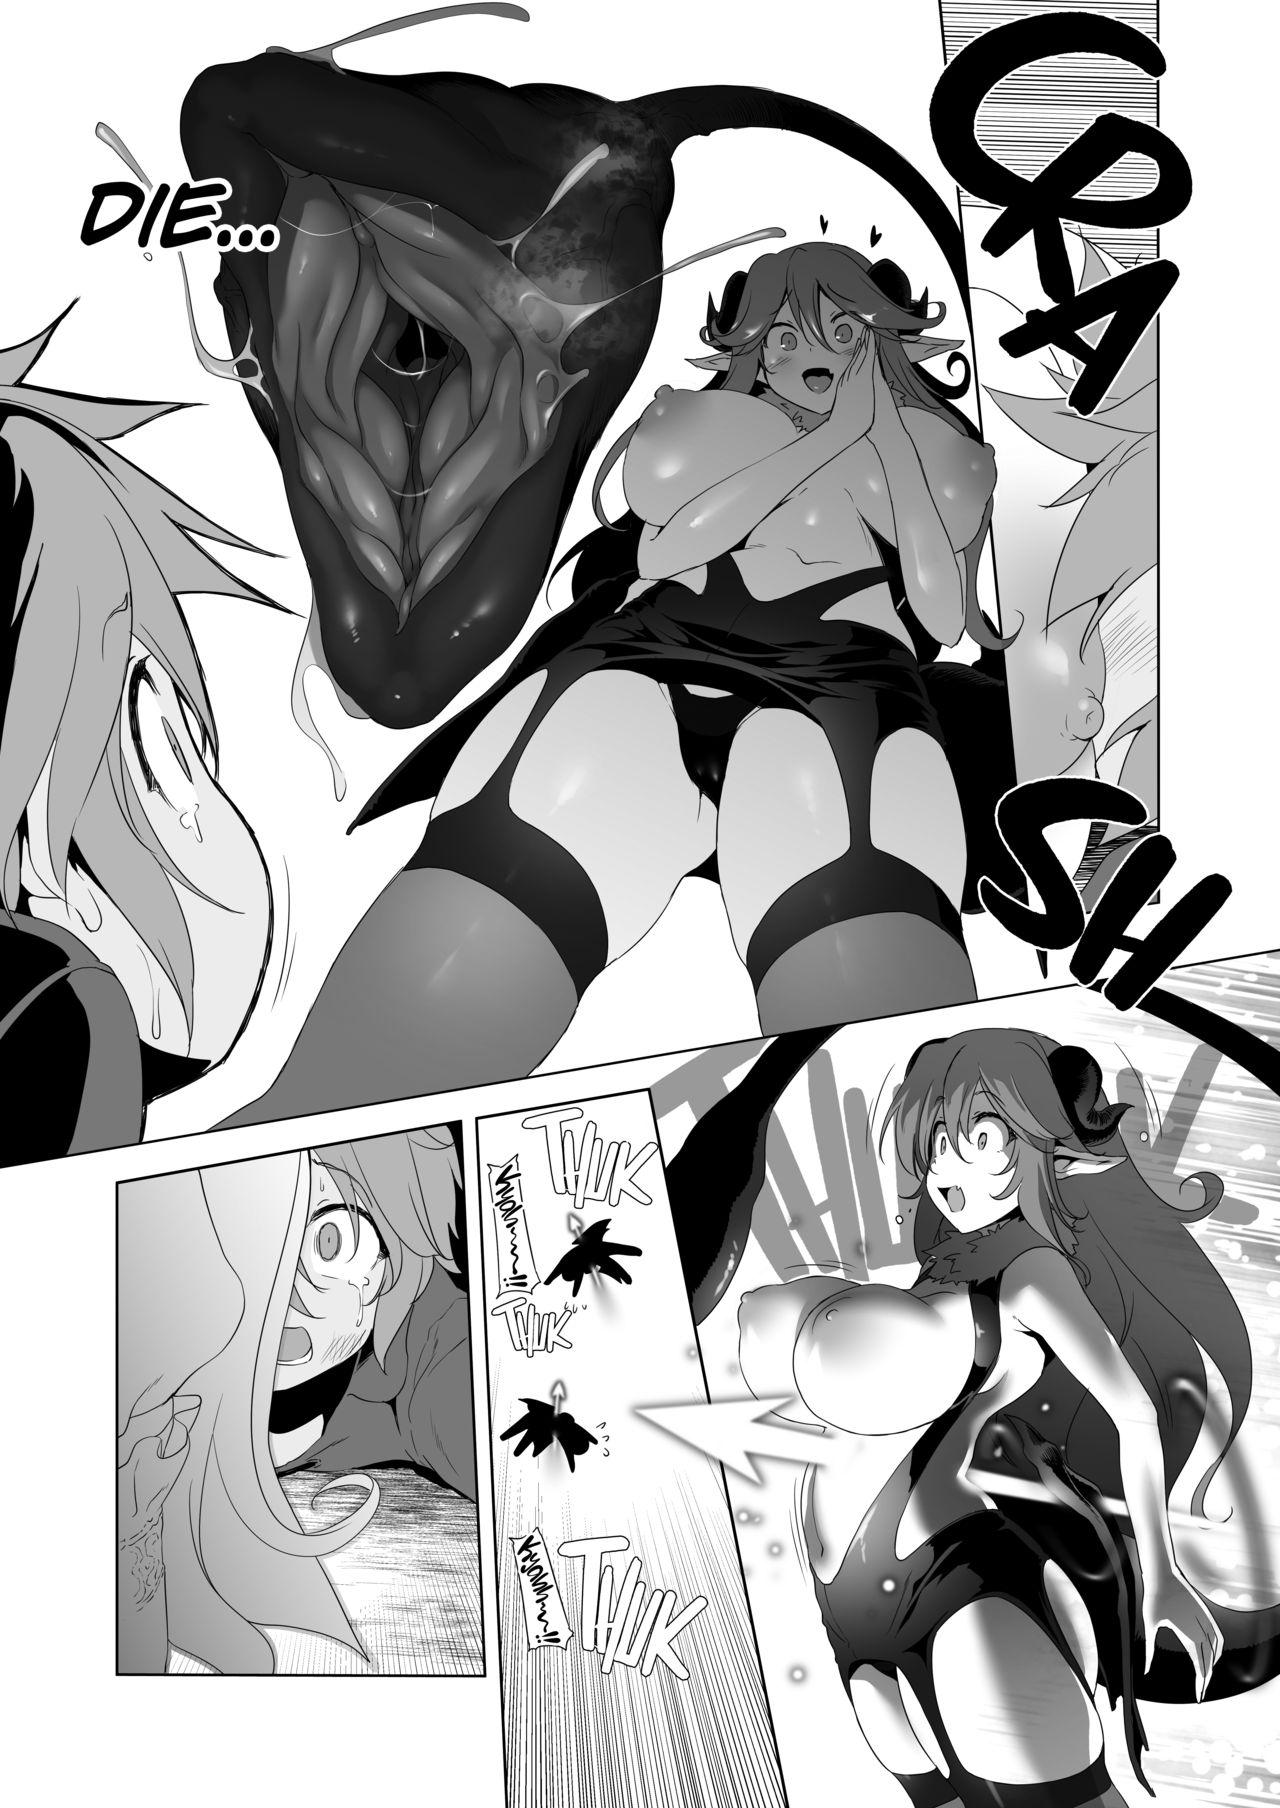 Round Ass Makotoni Zannen desu ga Bouken no Sho 7 wa Kiete Shimaimashita. - Original Boob - Page 2